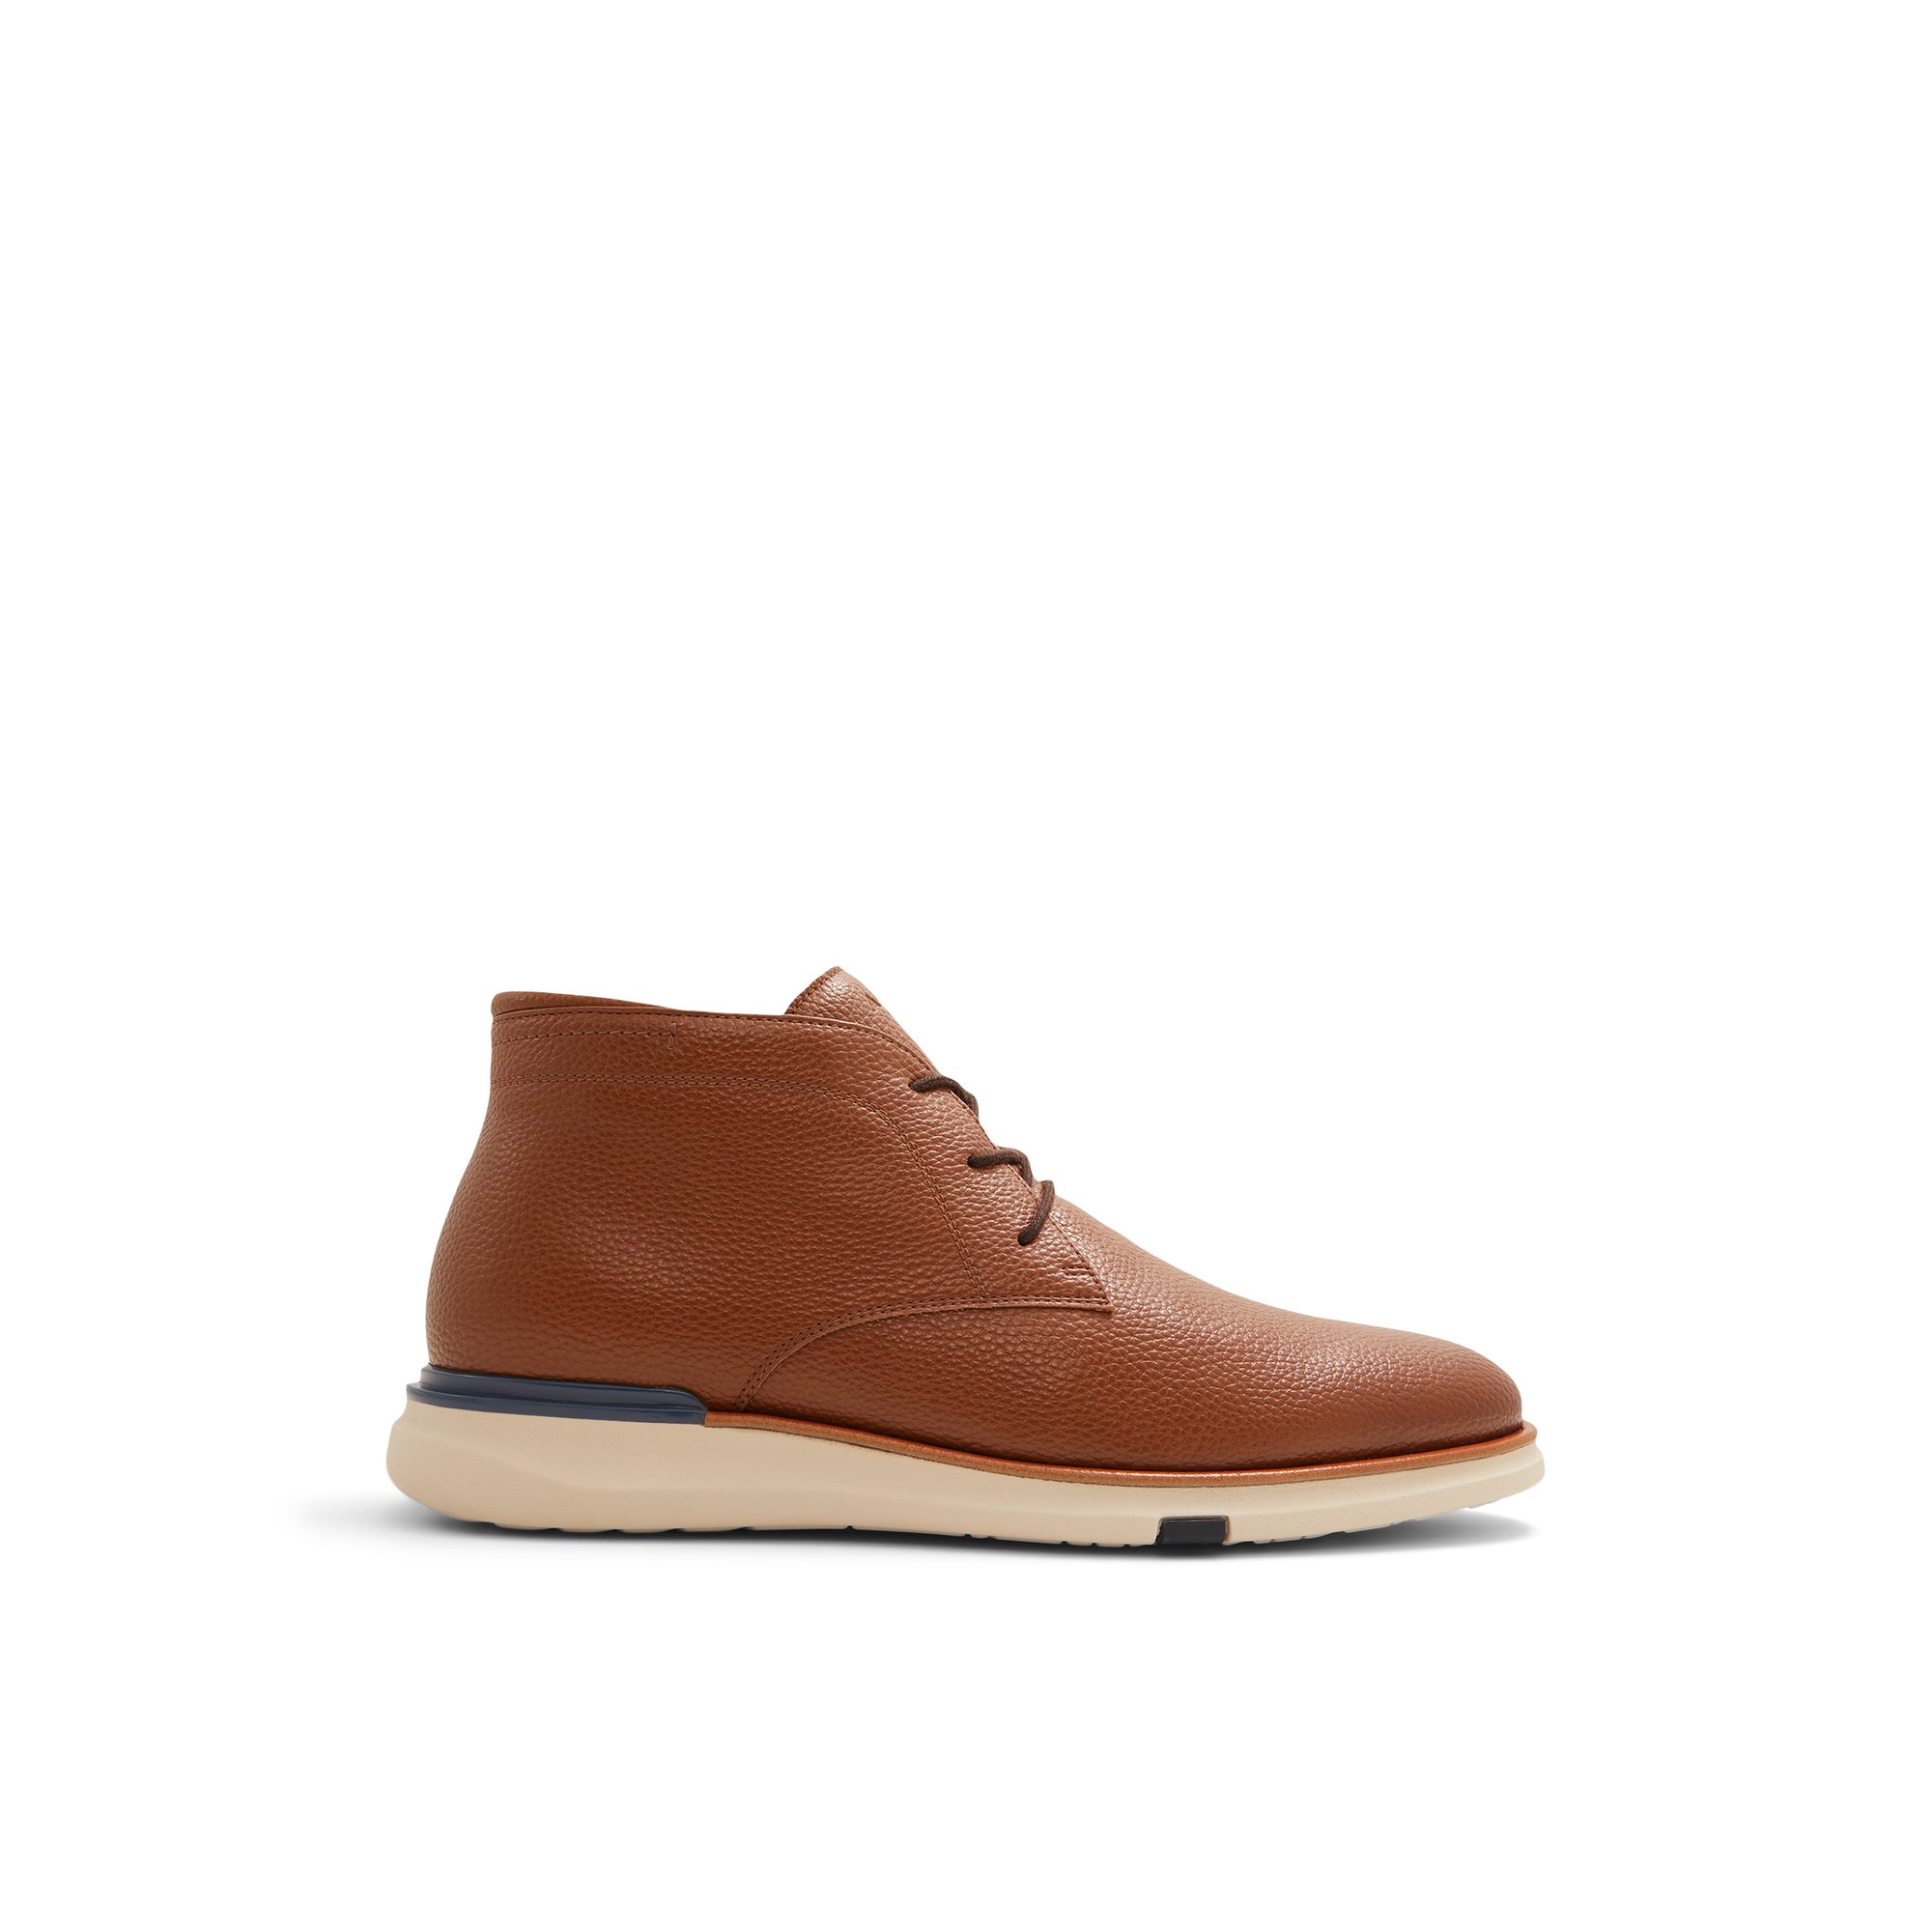 ALDO Stetson - Men's Boots Casual - Brown